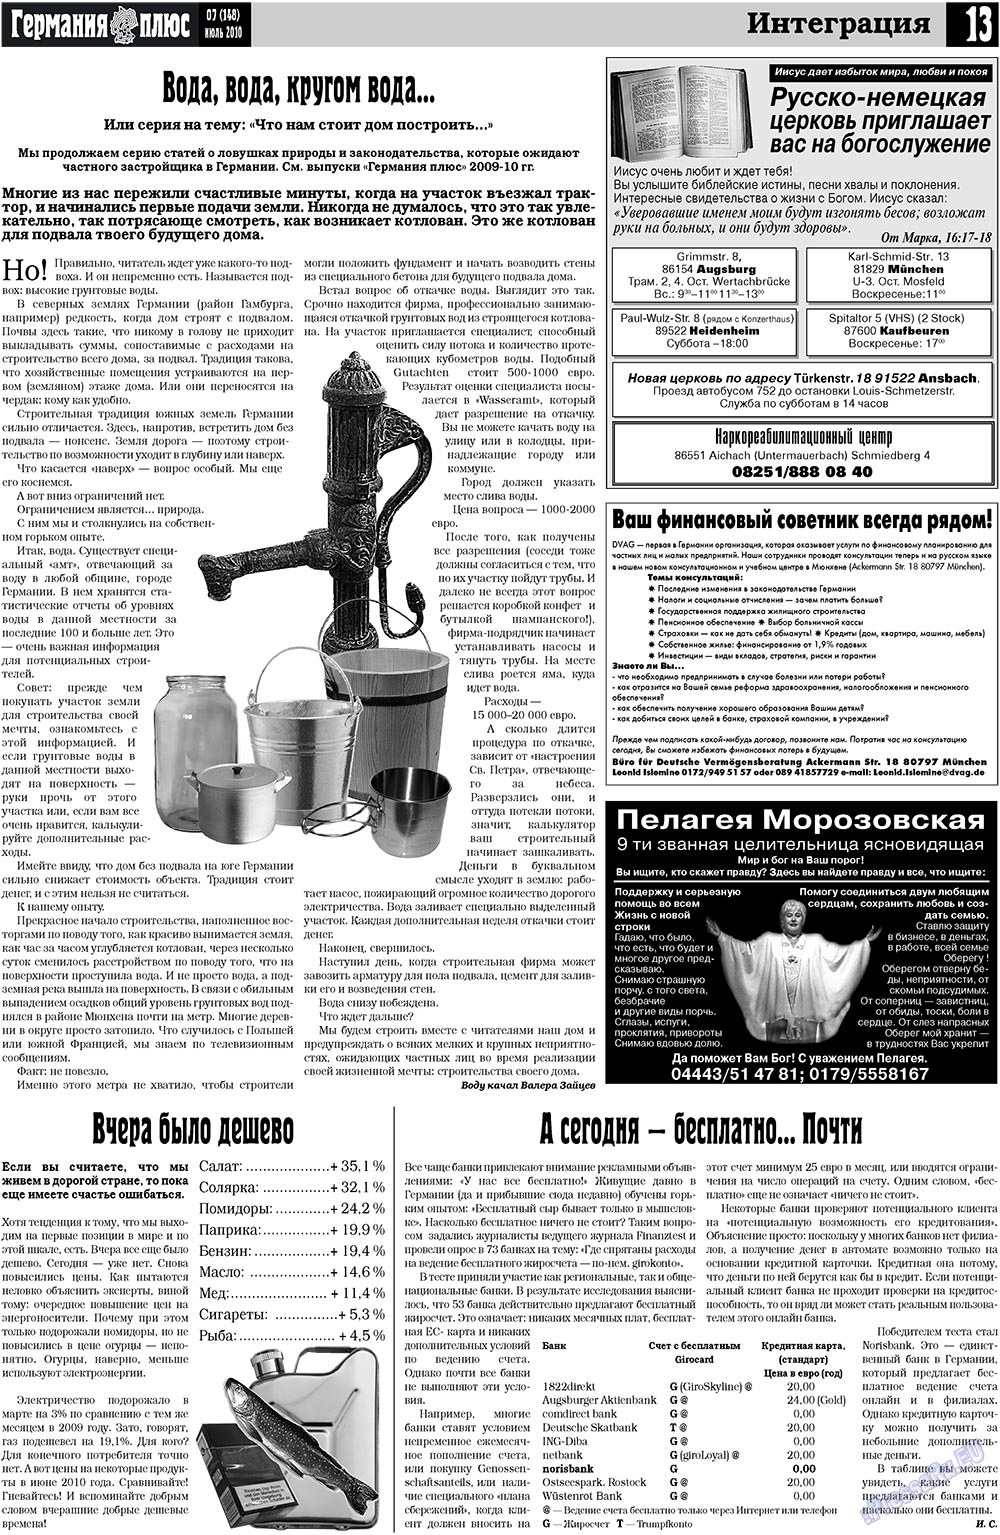 Германия плюс, газета. 2010 №7 стр.13